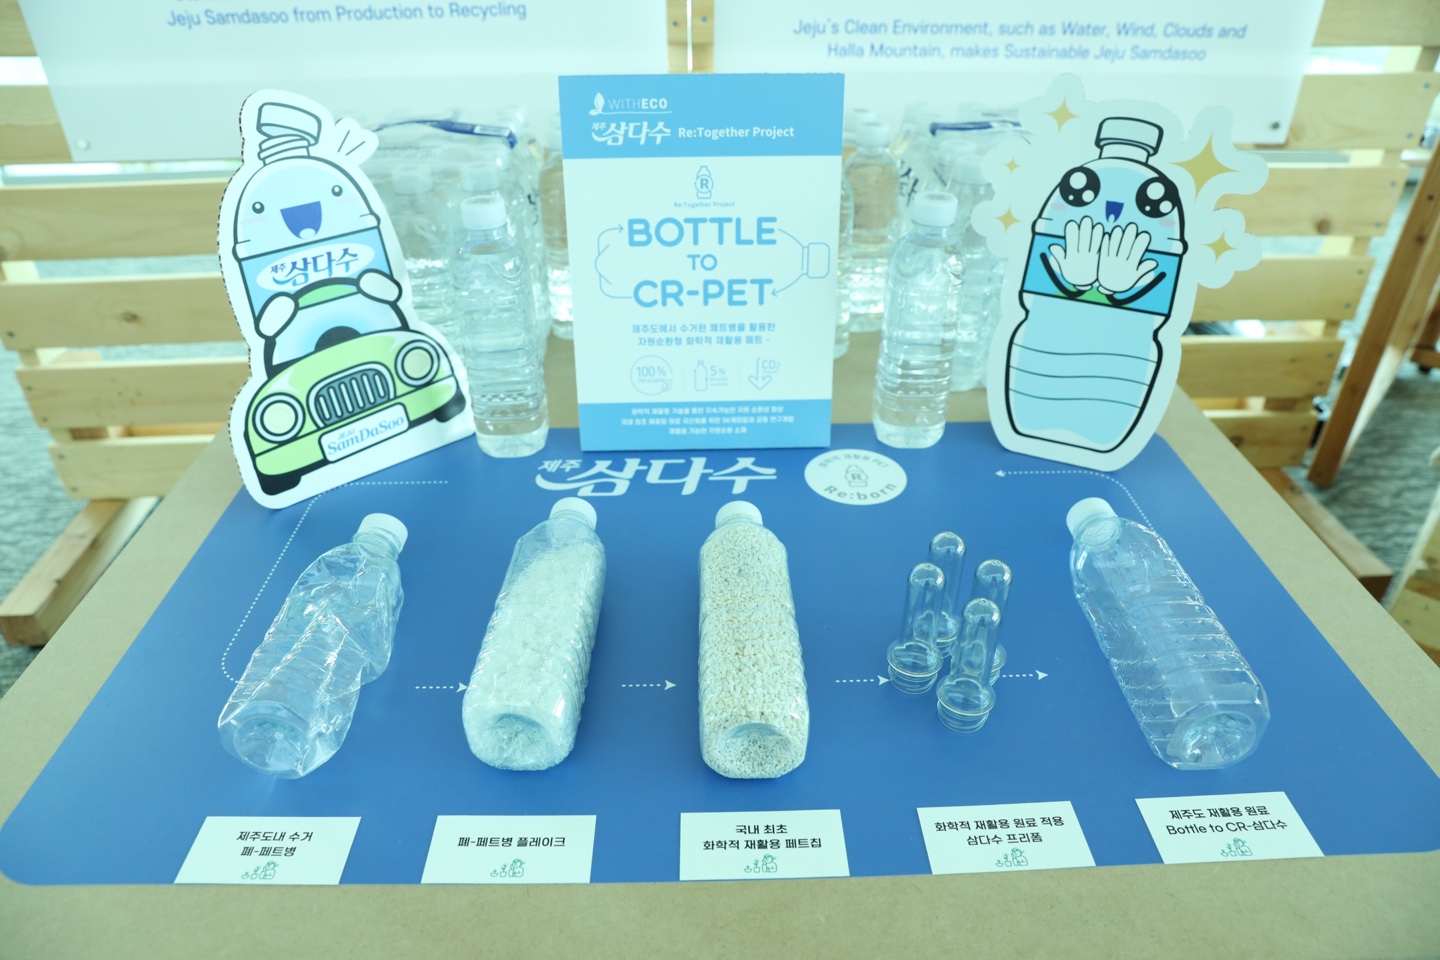 [사진자료 7] 국내 첫 국산 화학적 재활용 페트 ‘Bottle to CR-삼다수’ 이미지